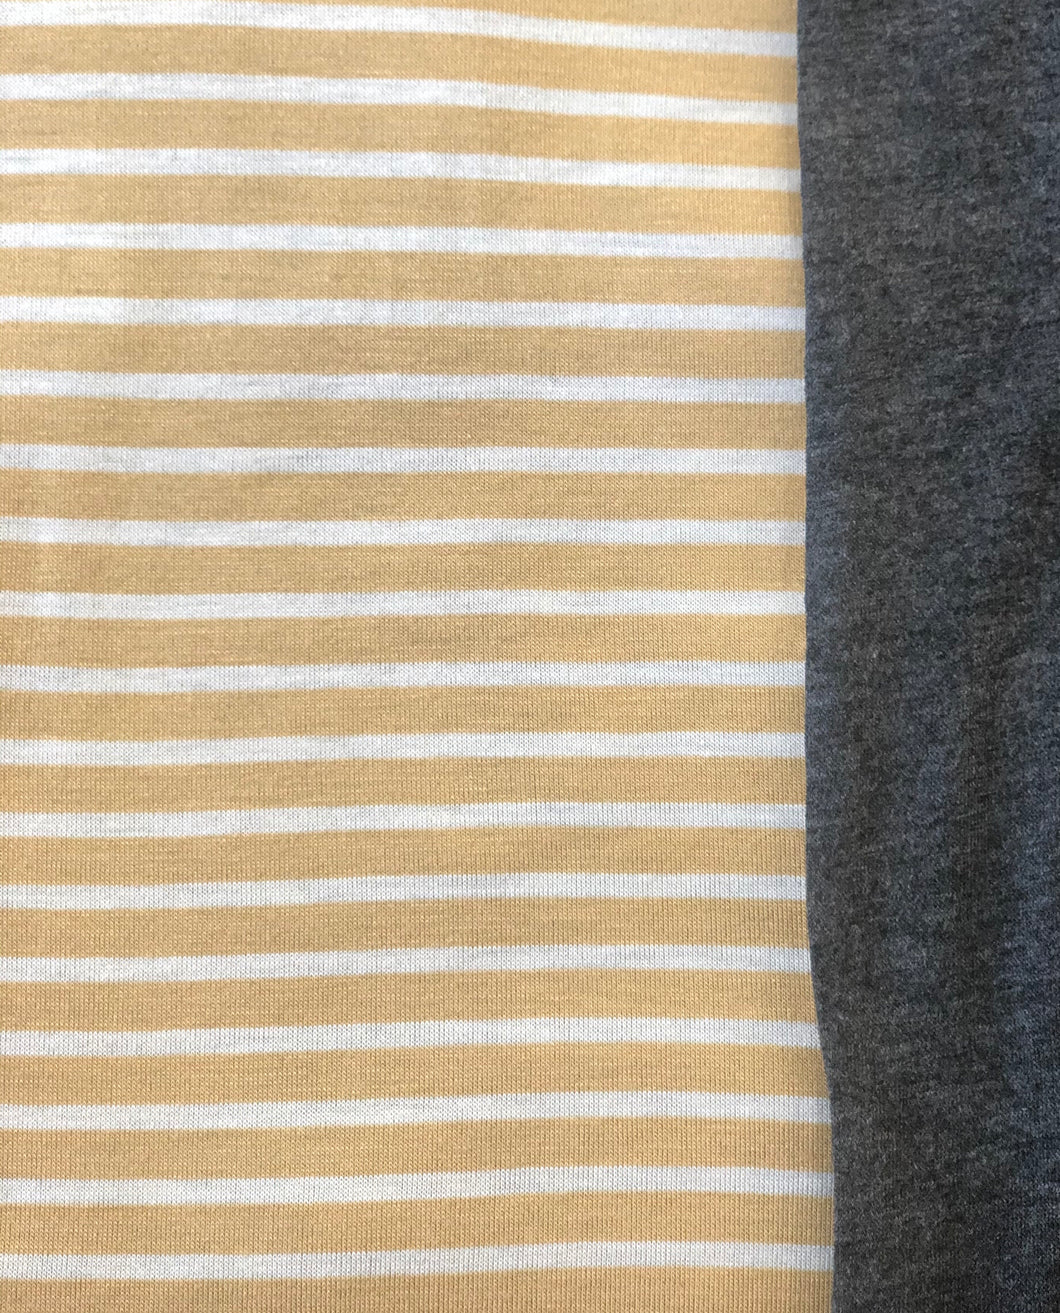 XL Yellow Stripe & Charcoal Grey